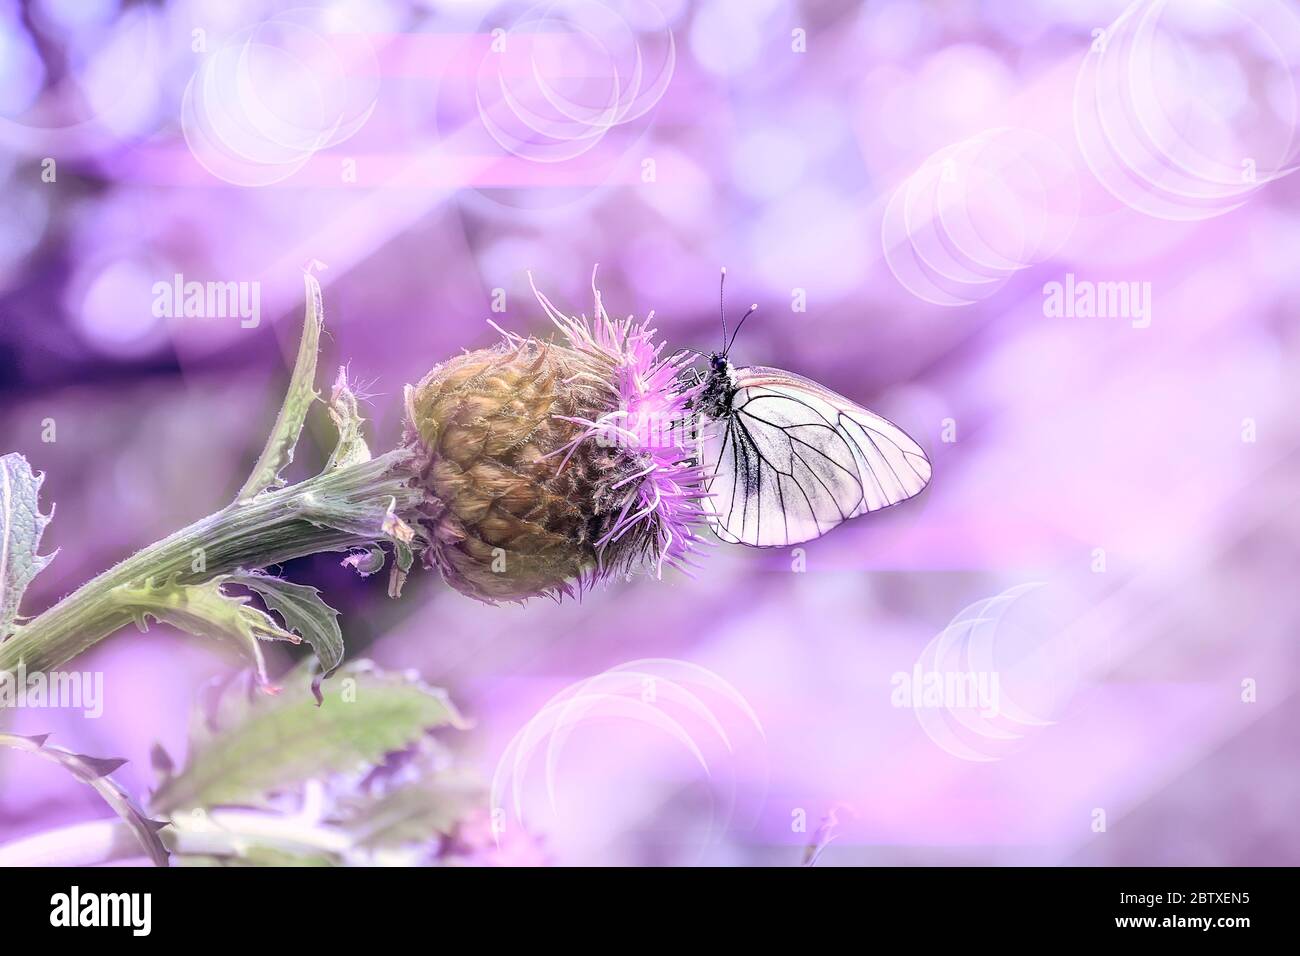 Rose matin d'été sur la prairie - image artistique délicate. Macro de papillon blanc sur fleur pourpre Rhaponticum carthamoides - sprin romantique Banque D'Images